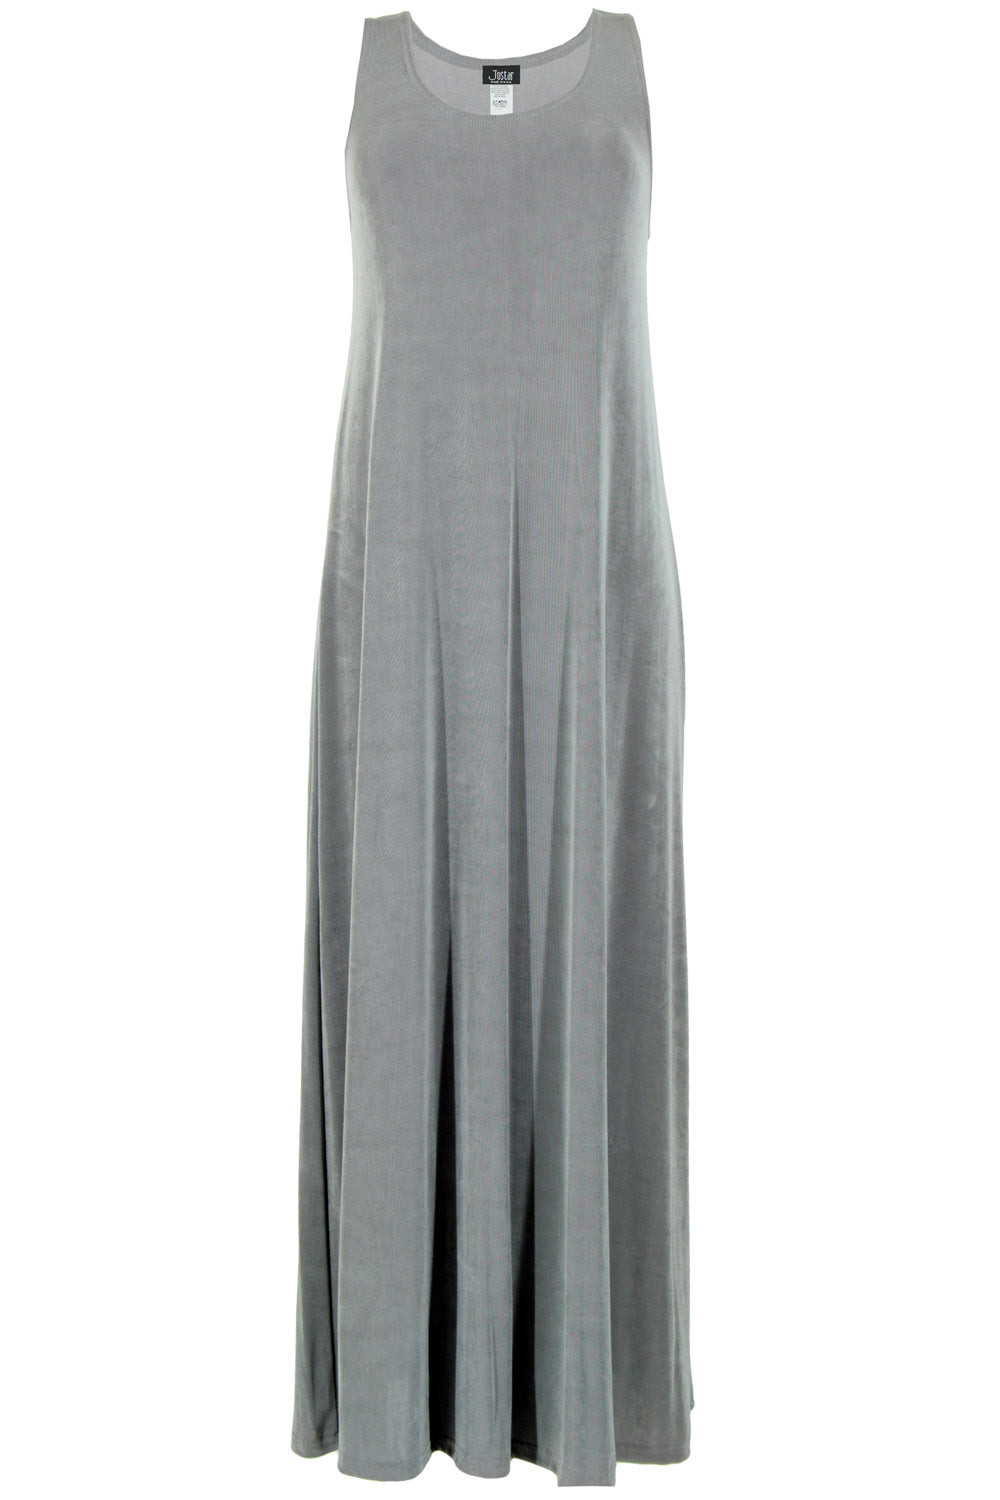 Jostar Women's Non Iron Long Tank Dress in Plus Size, 700AY-TX - Jostar Online